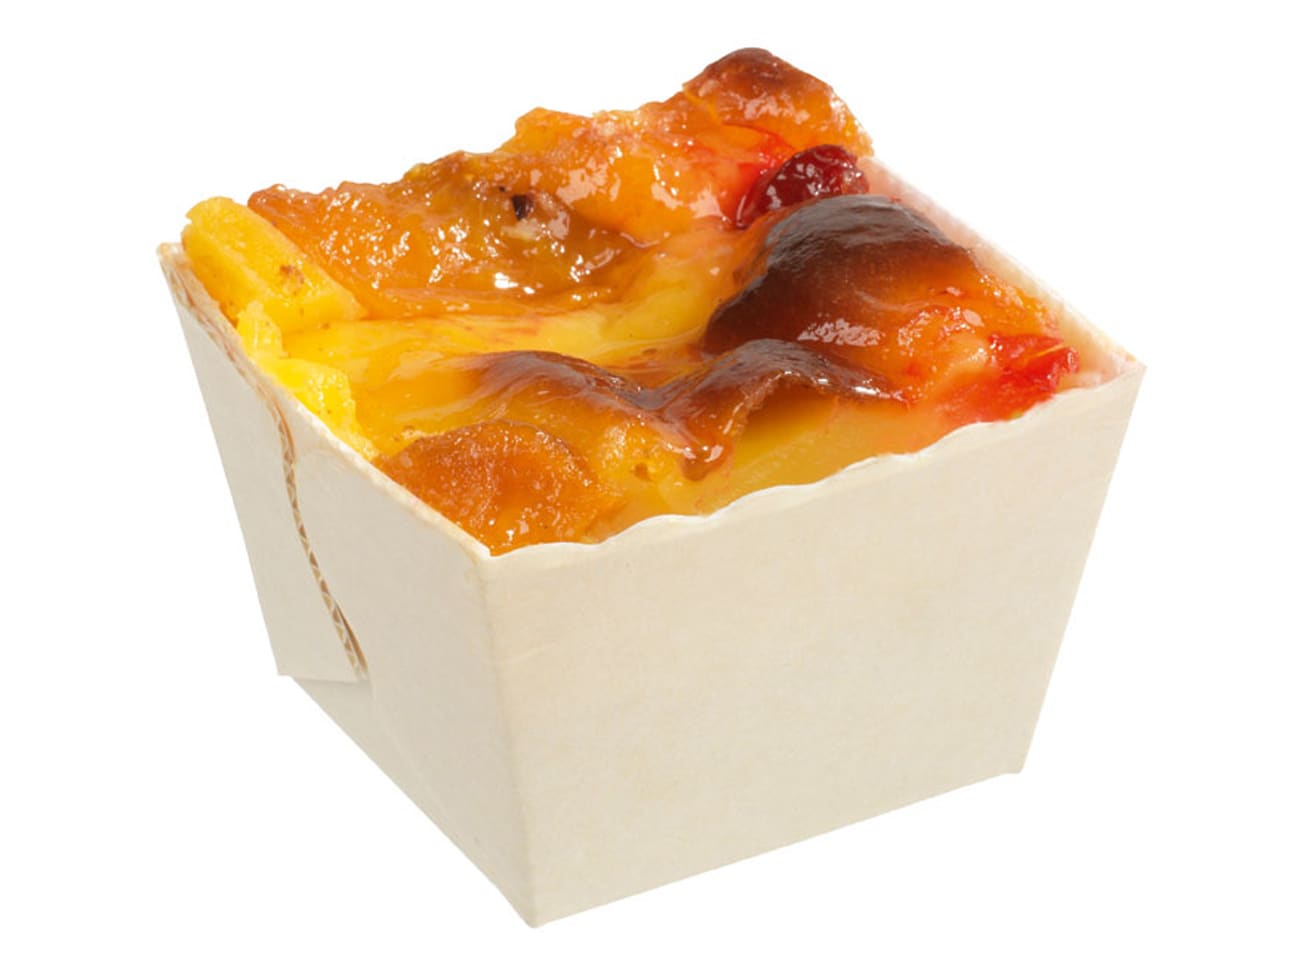 Moule à gâteau jetable carton carré 4,5 cm (x80) - Nordia